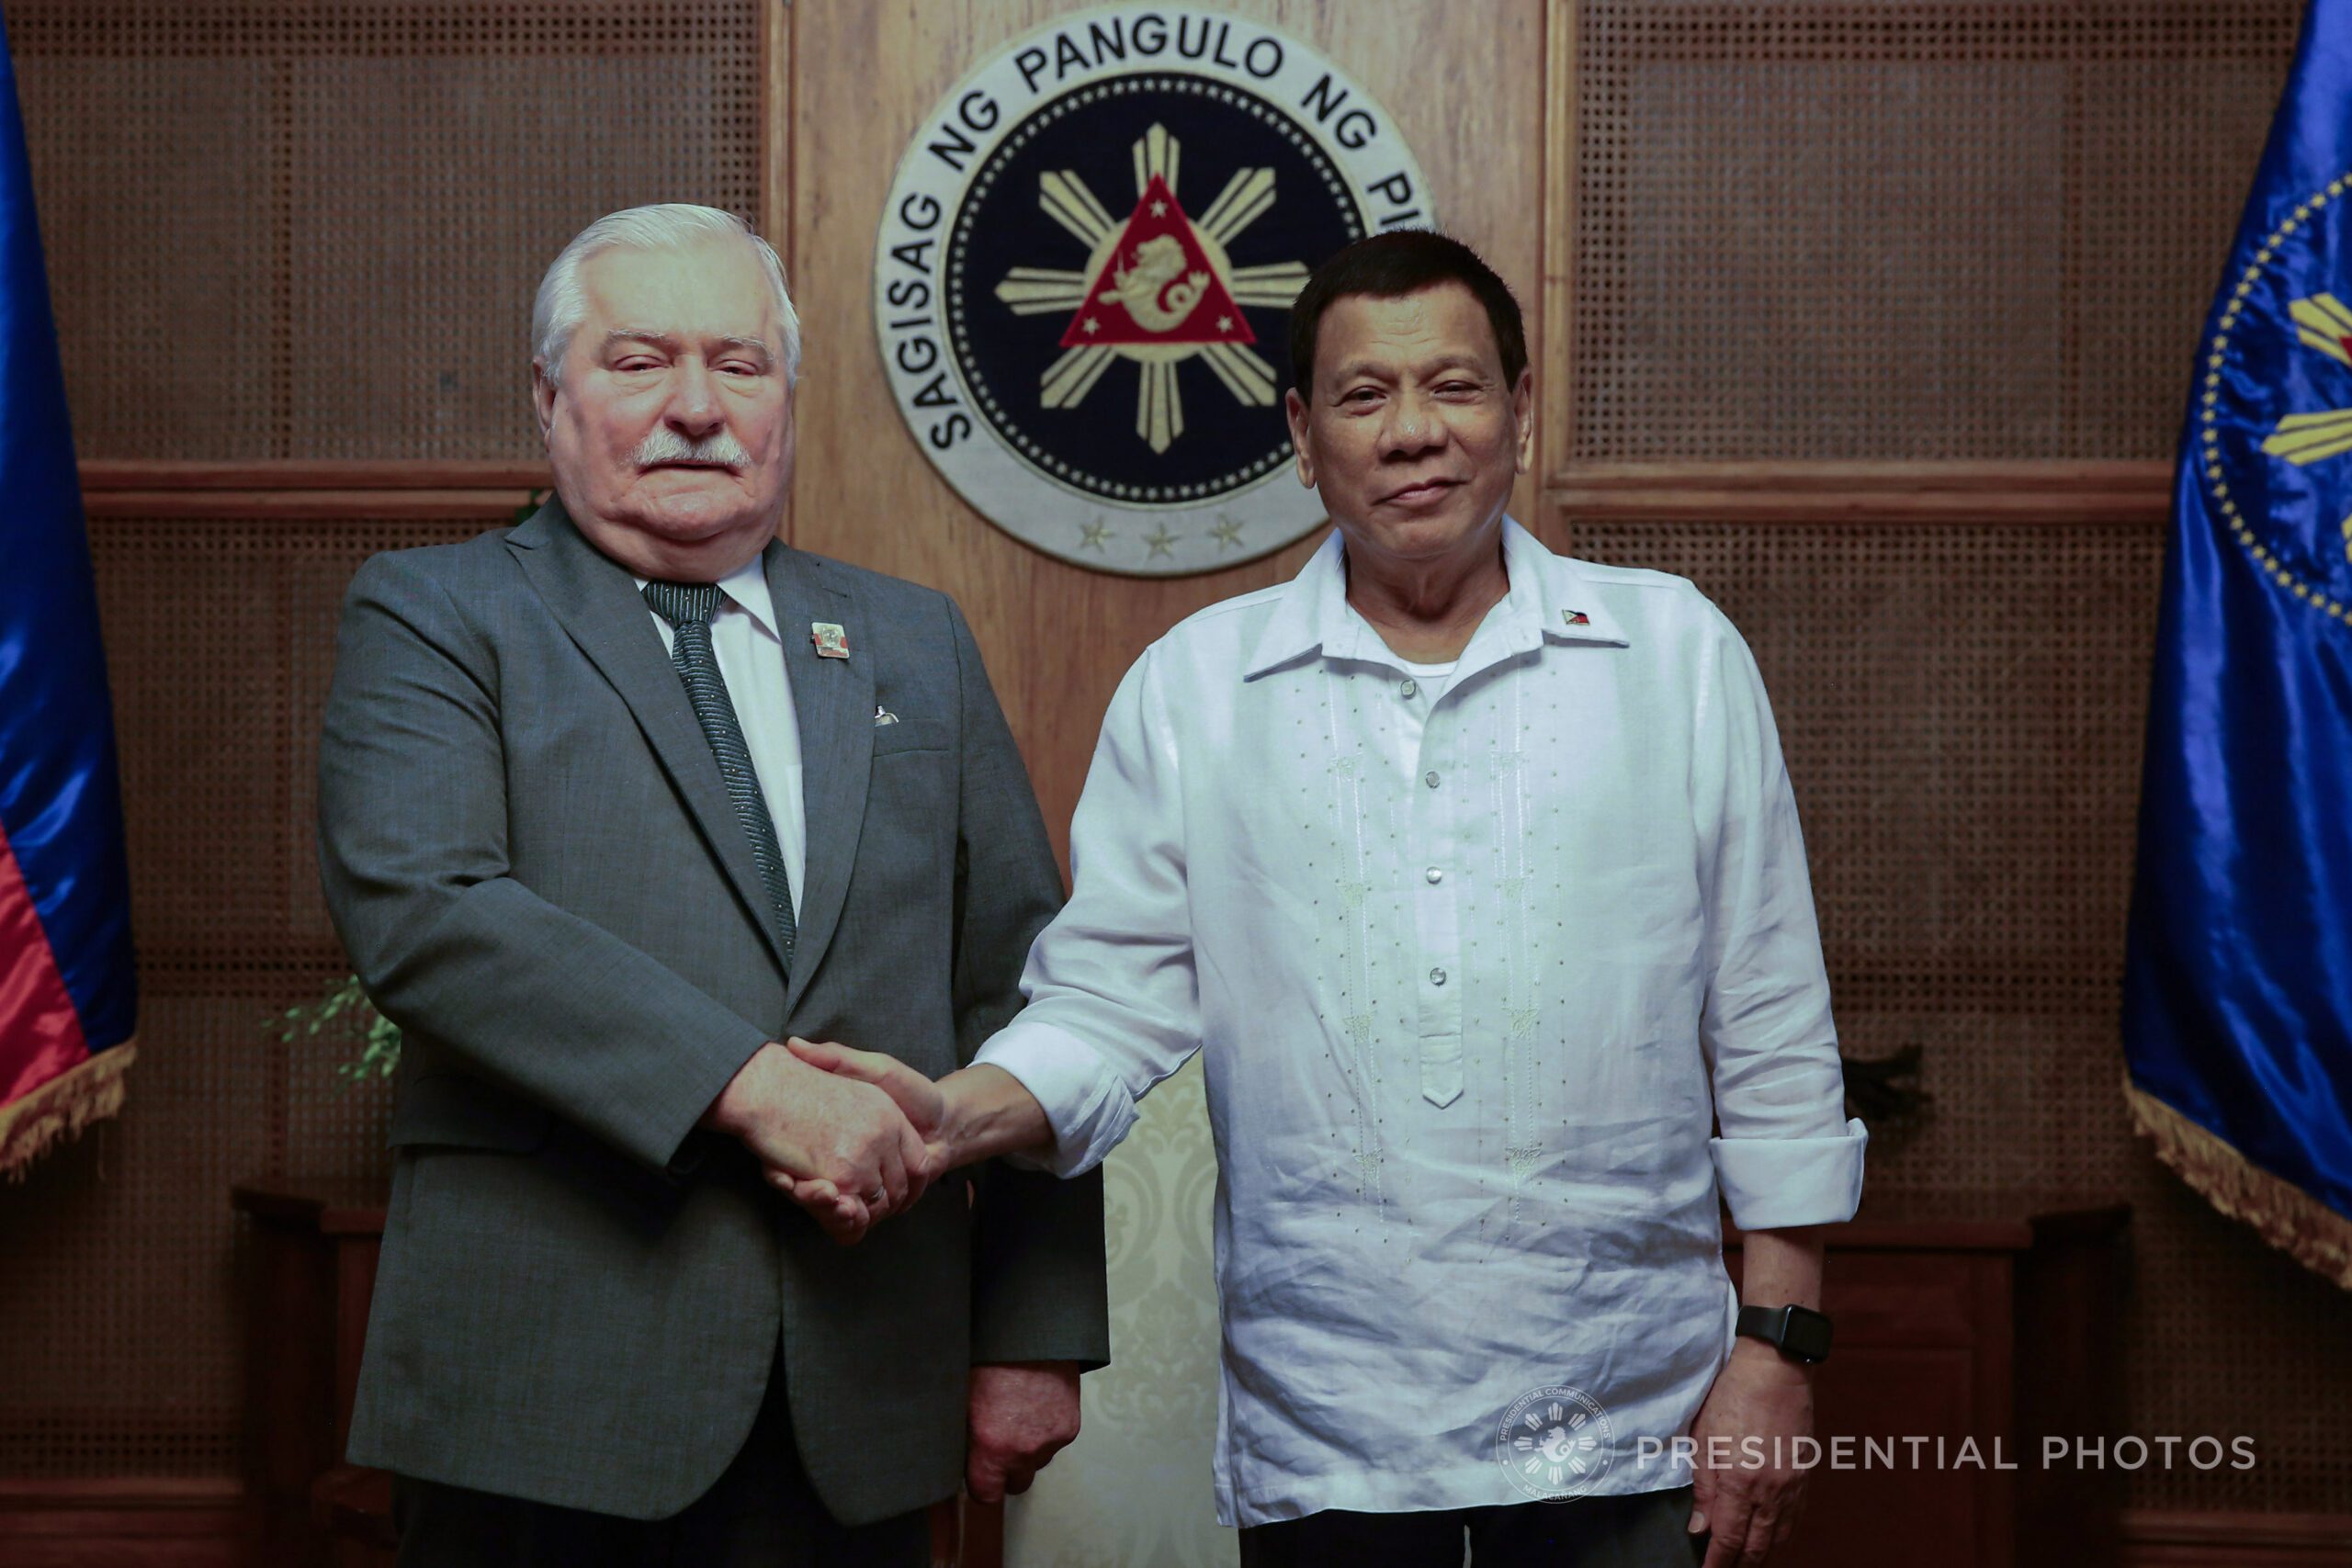 LOOK: Duterte meets Nobel laureate Lech Walesa